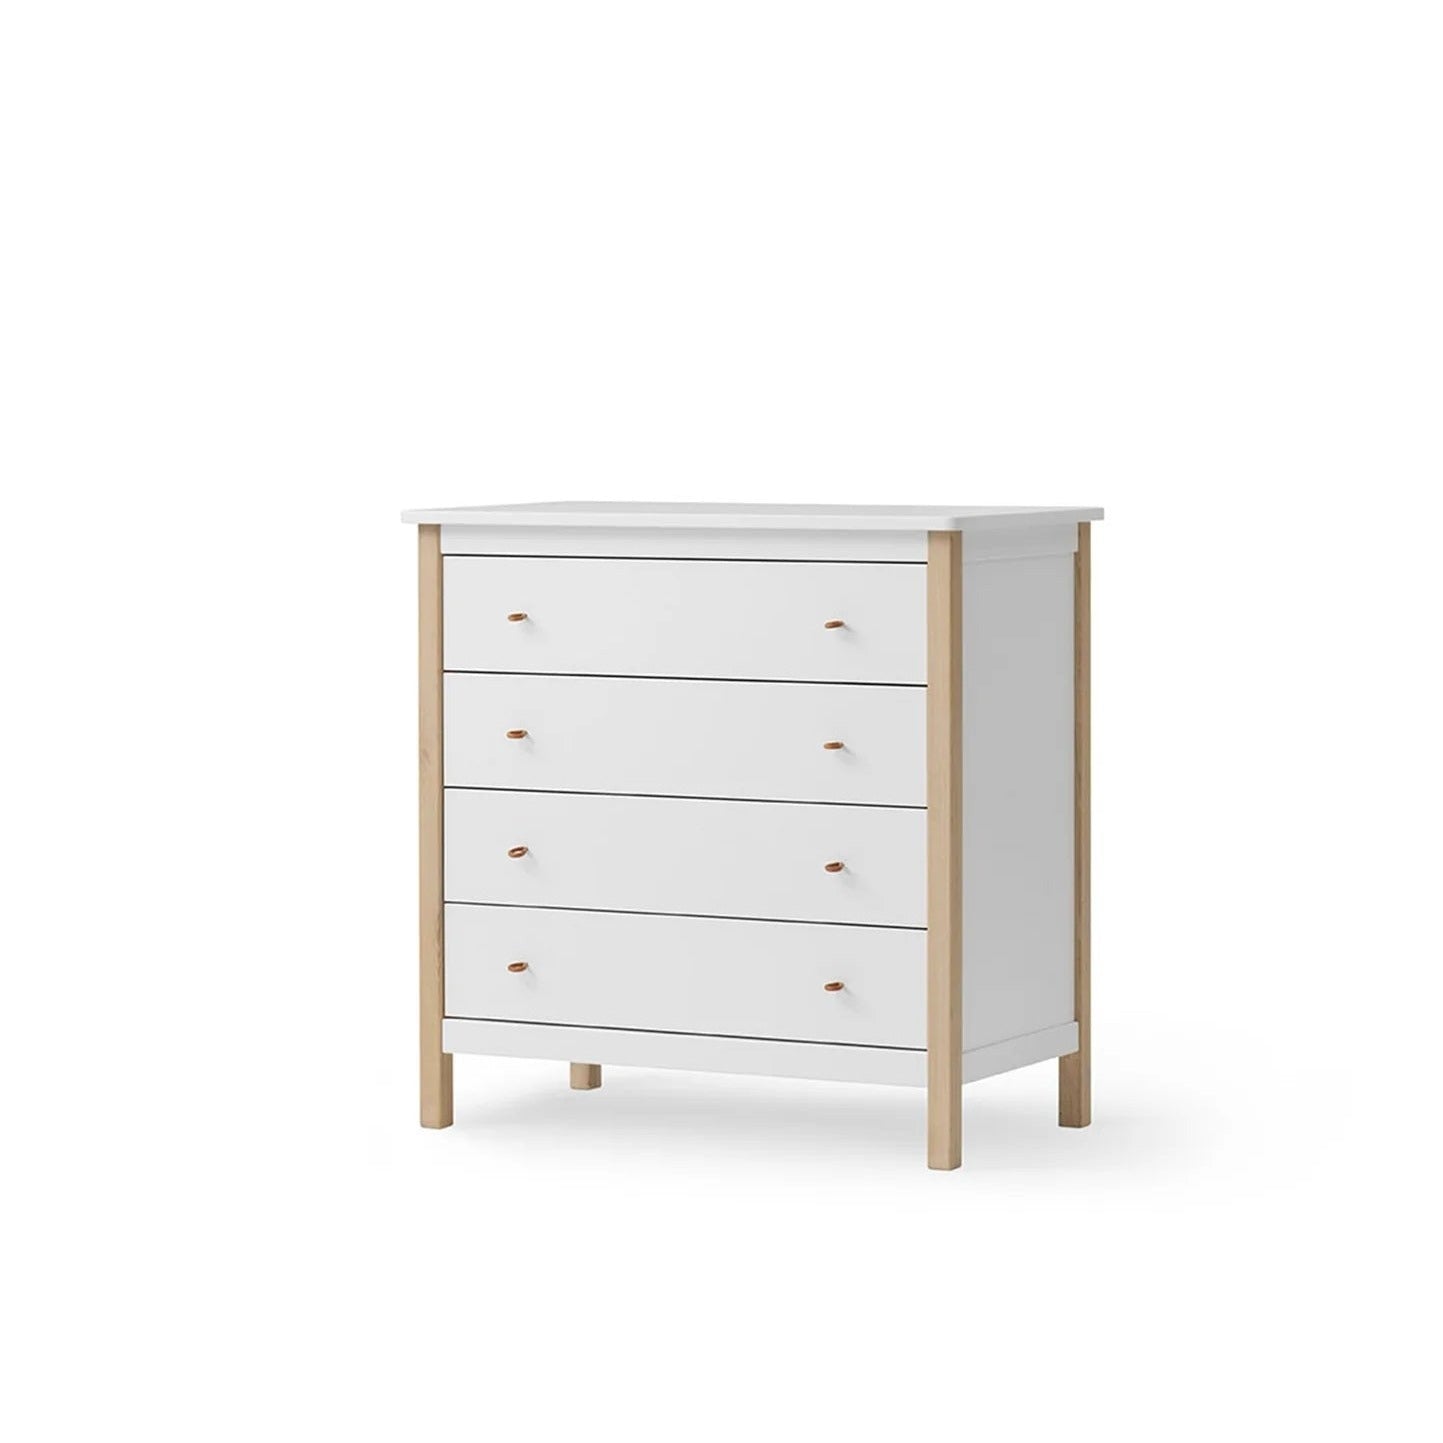 Oliver Furniture Wood Dresser - 4 Drawers